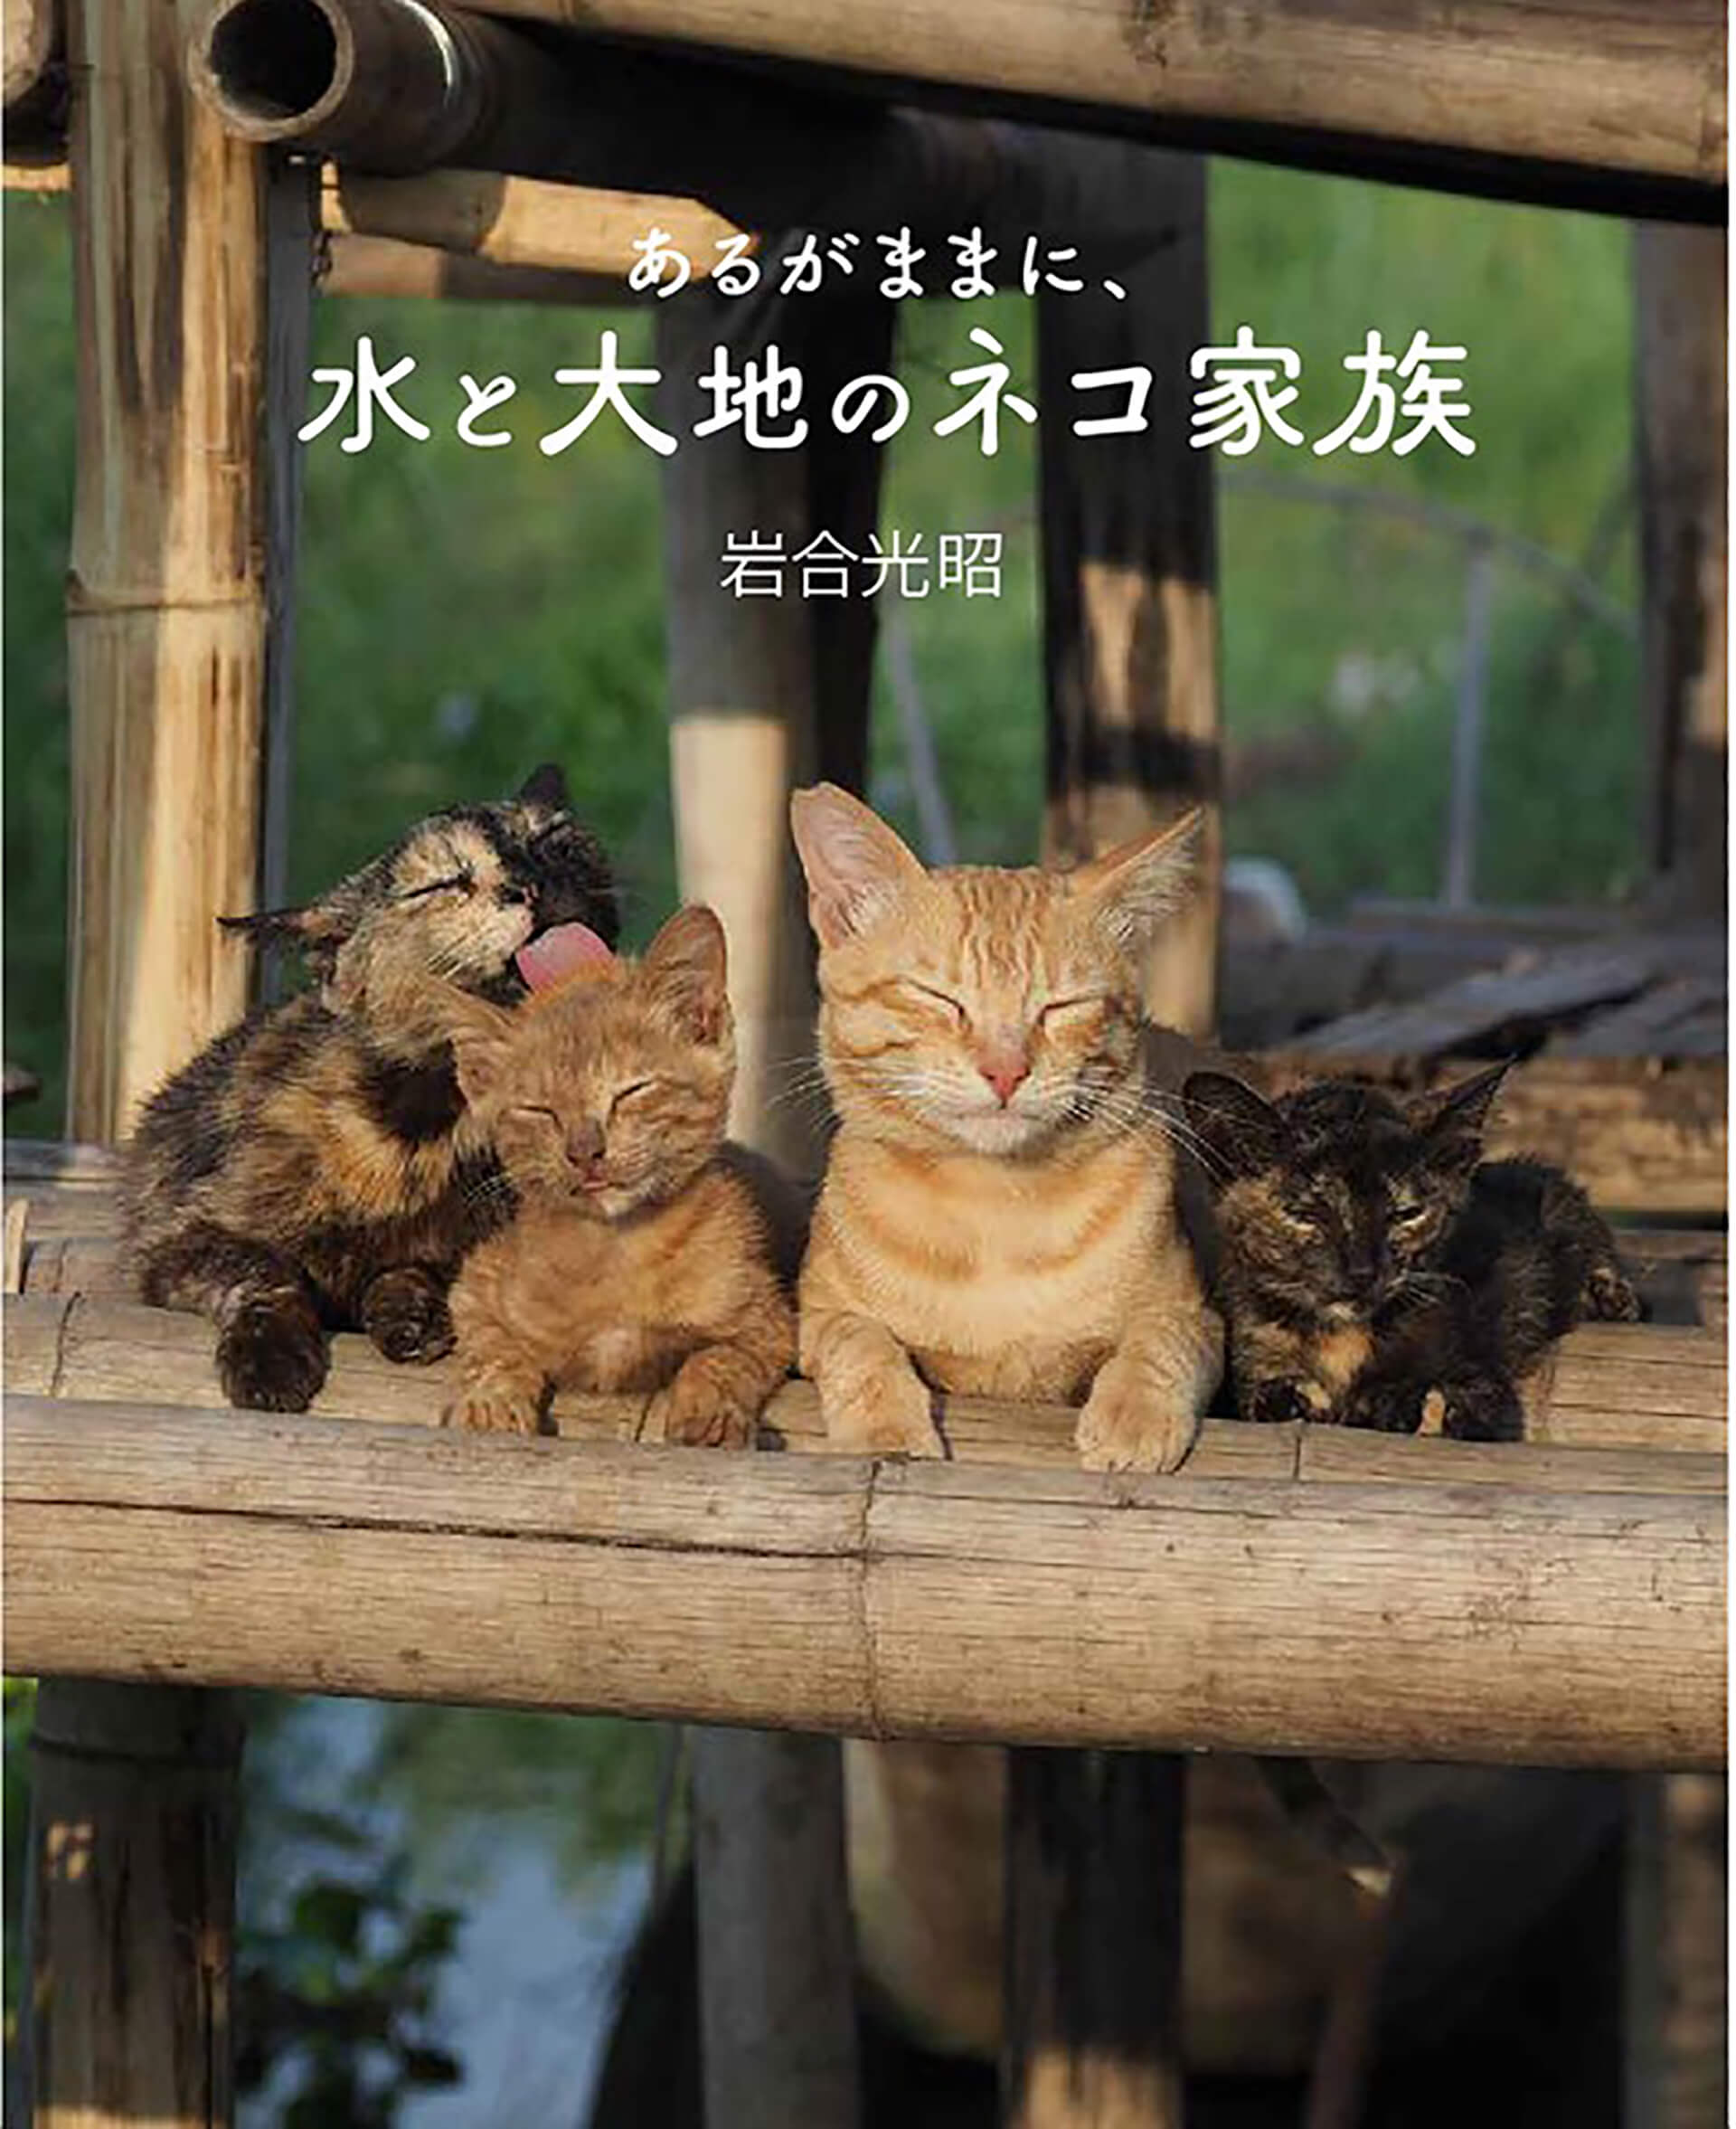 劇場版 岩合光昭の世界ネコ歩き　あるがままに、水と大地のネコ家族